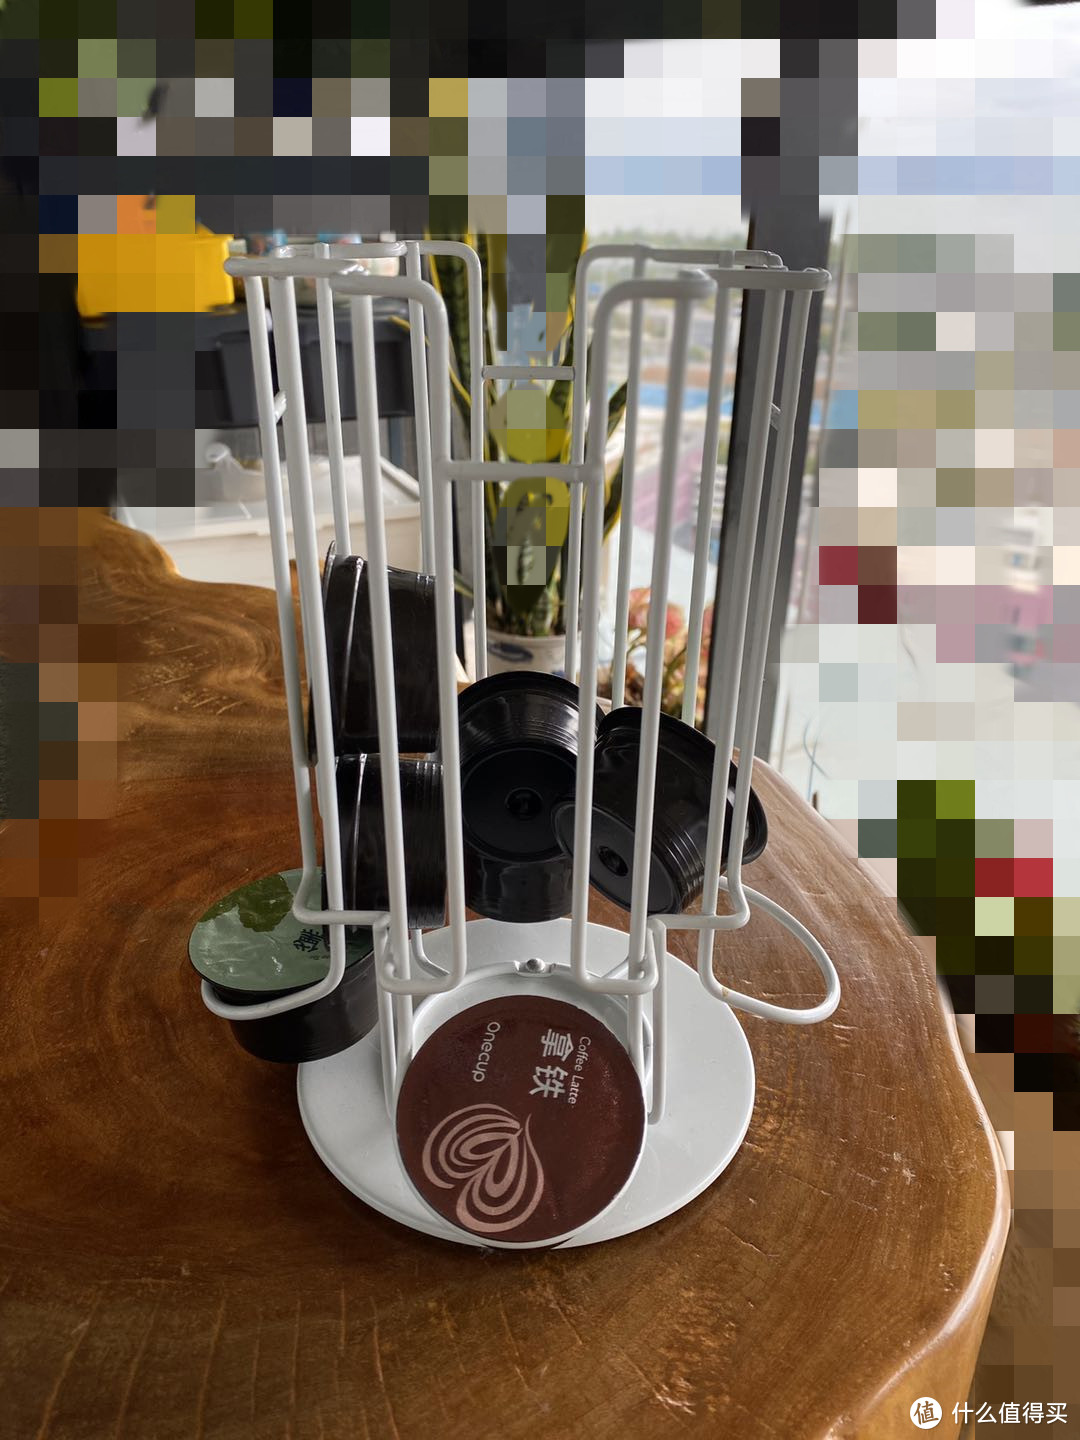 九阳 onecup 胶囊咖啡机使用小分享